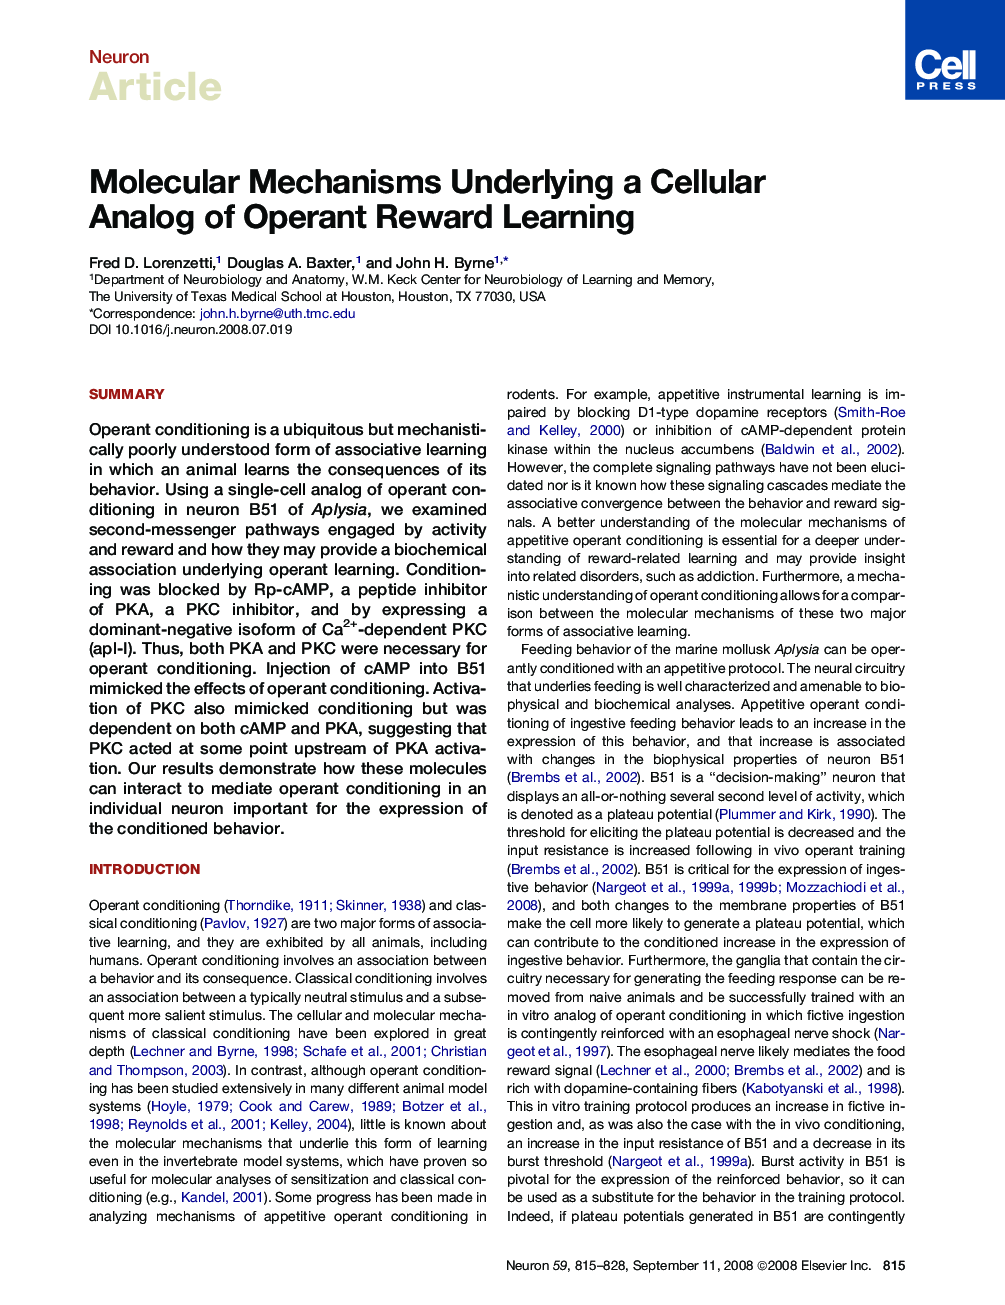 Molecular Mechanisms Underlying a Cellular Analog of Operant Reward Learning